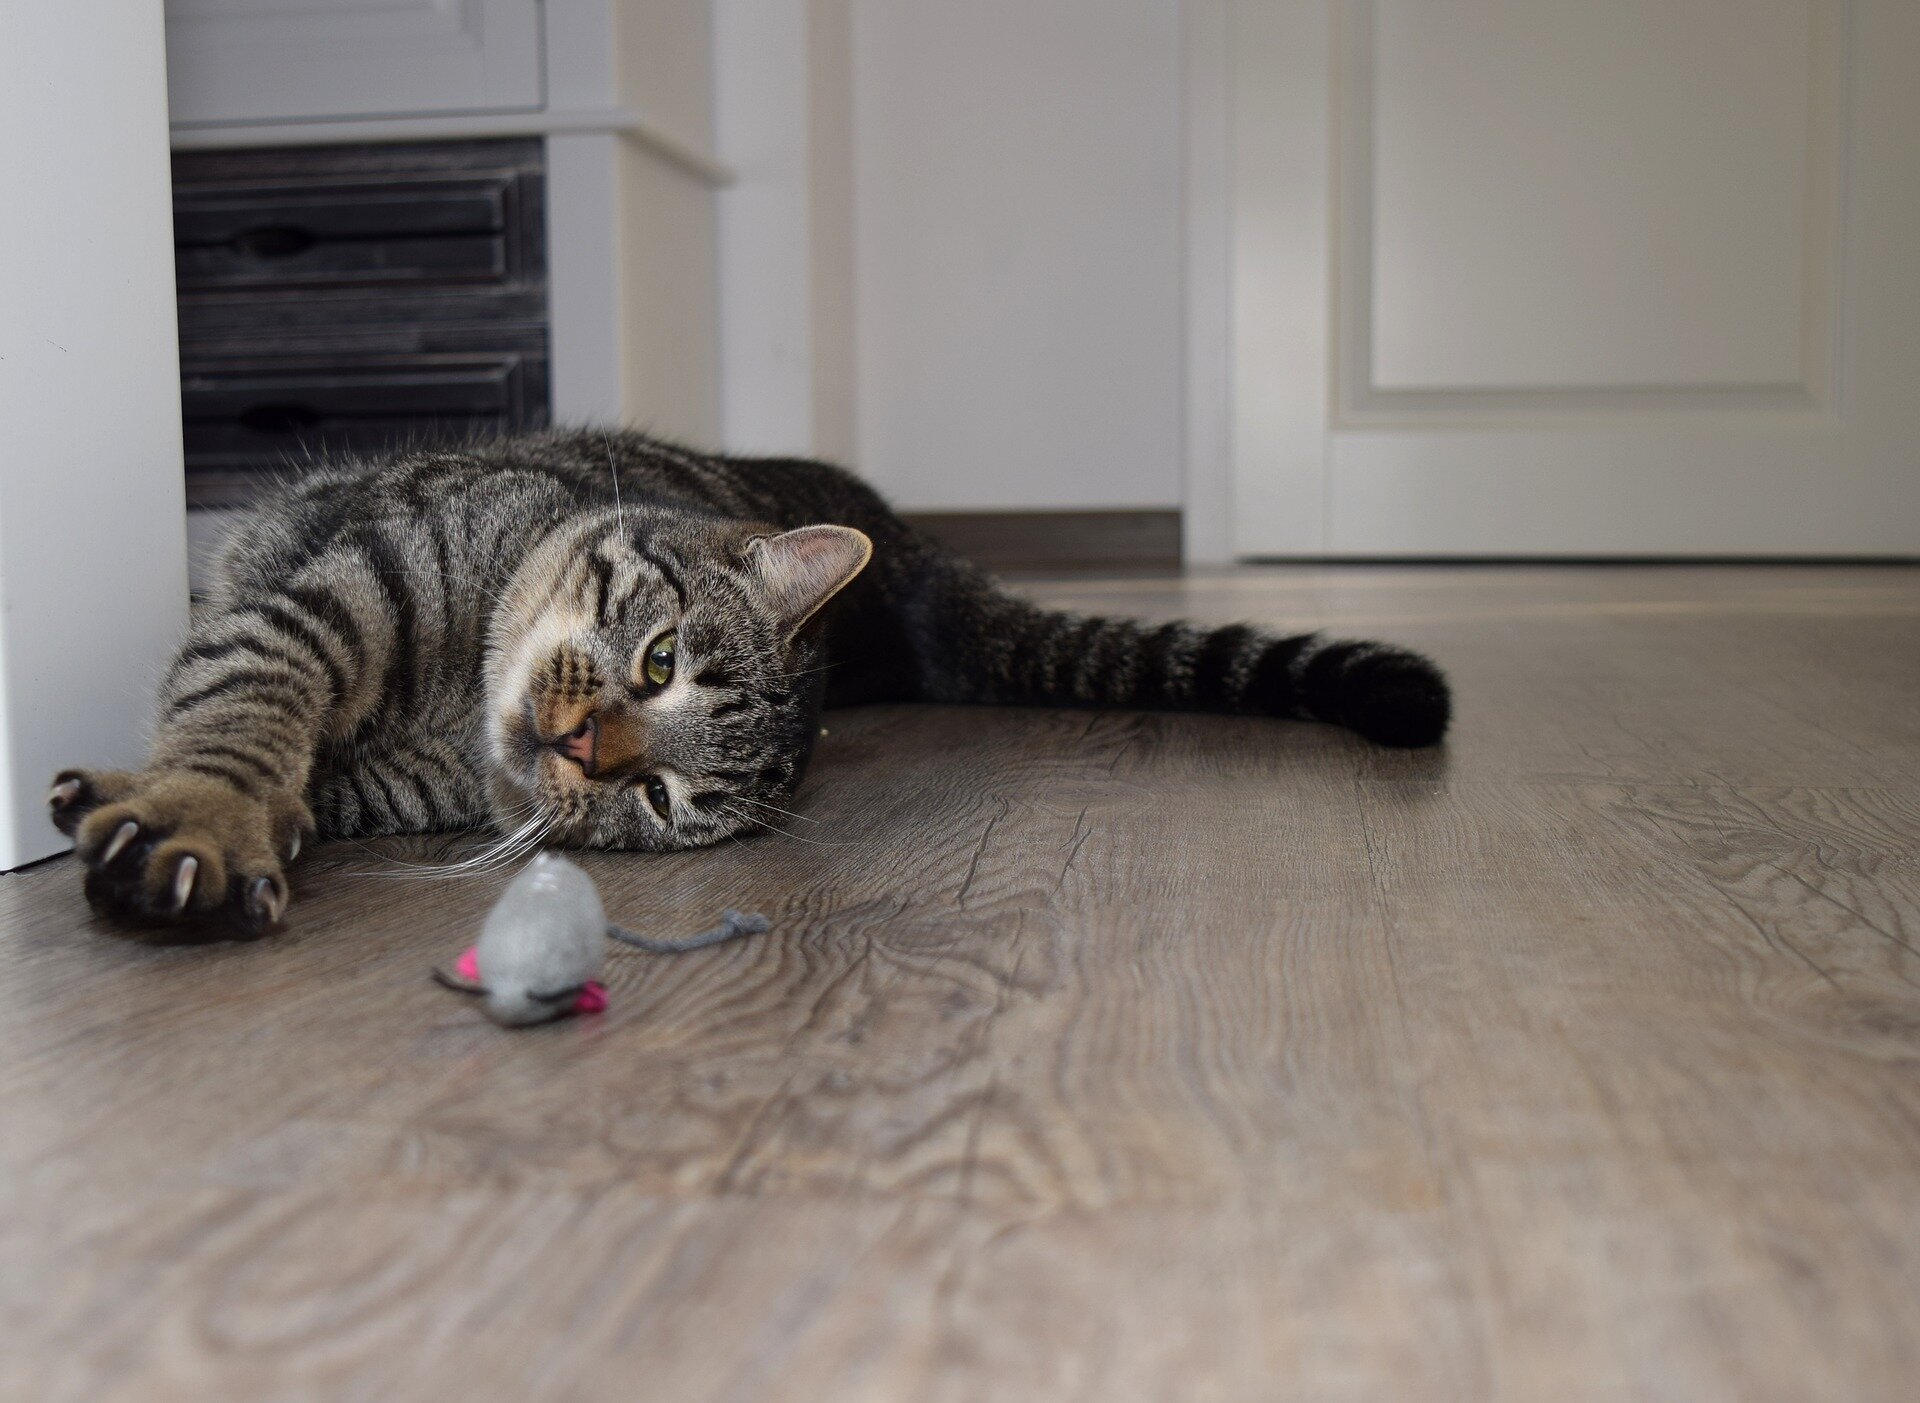 oyuncağı ile birlikte yerde yatan tekir kedi